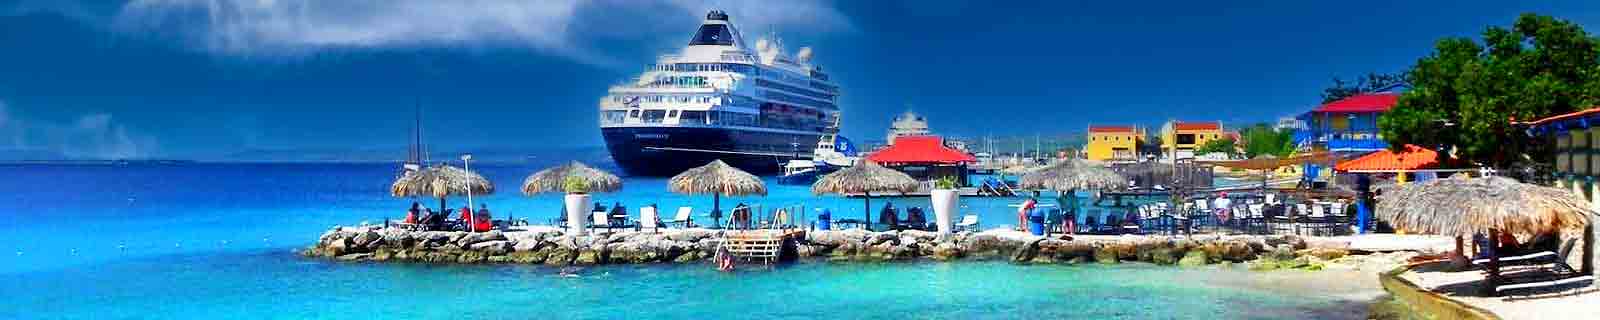 kralendijk cruise port